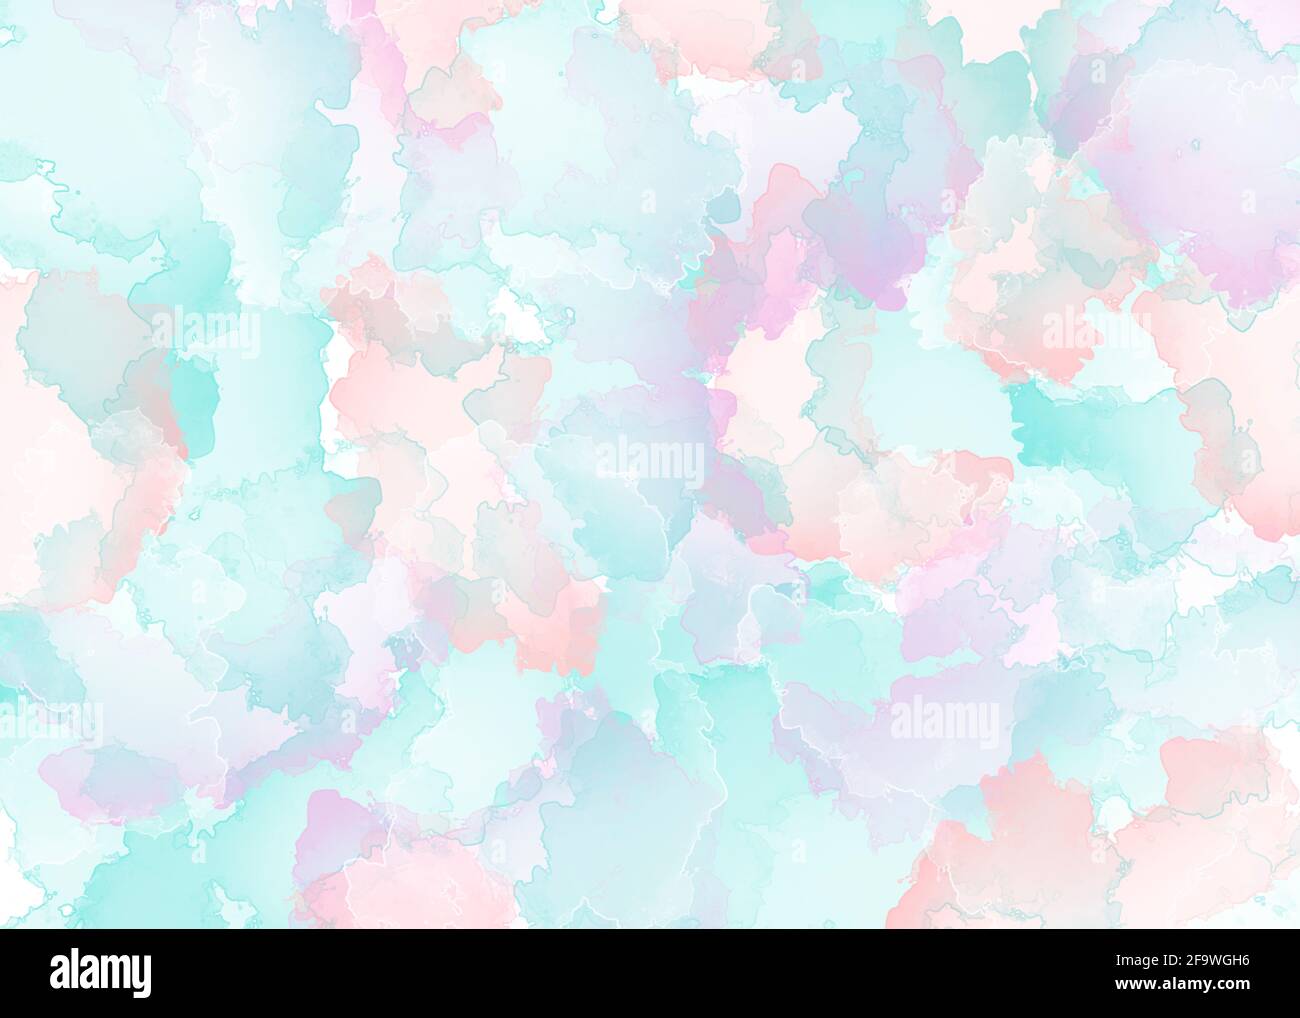 Abstrakter, weicher Hintergrund in Pastellfarben in Form von Farbstreifen. Illustration von farbigem Marmor Stockfoto